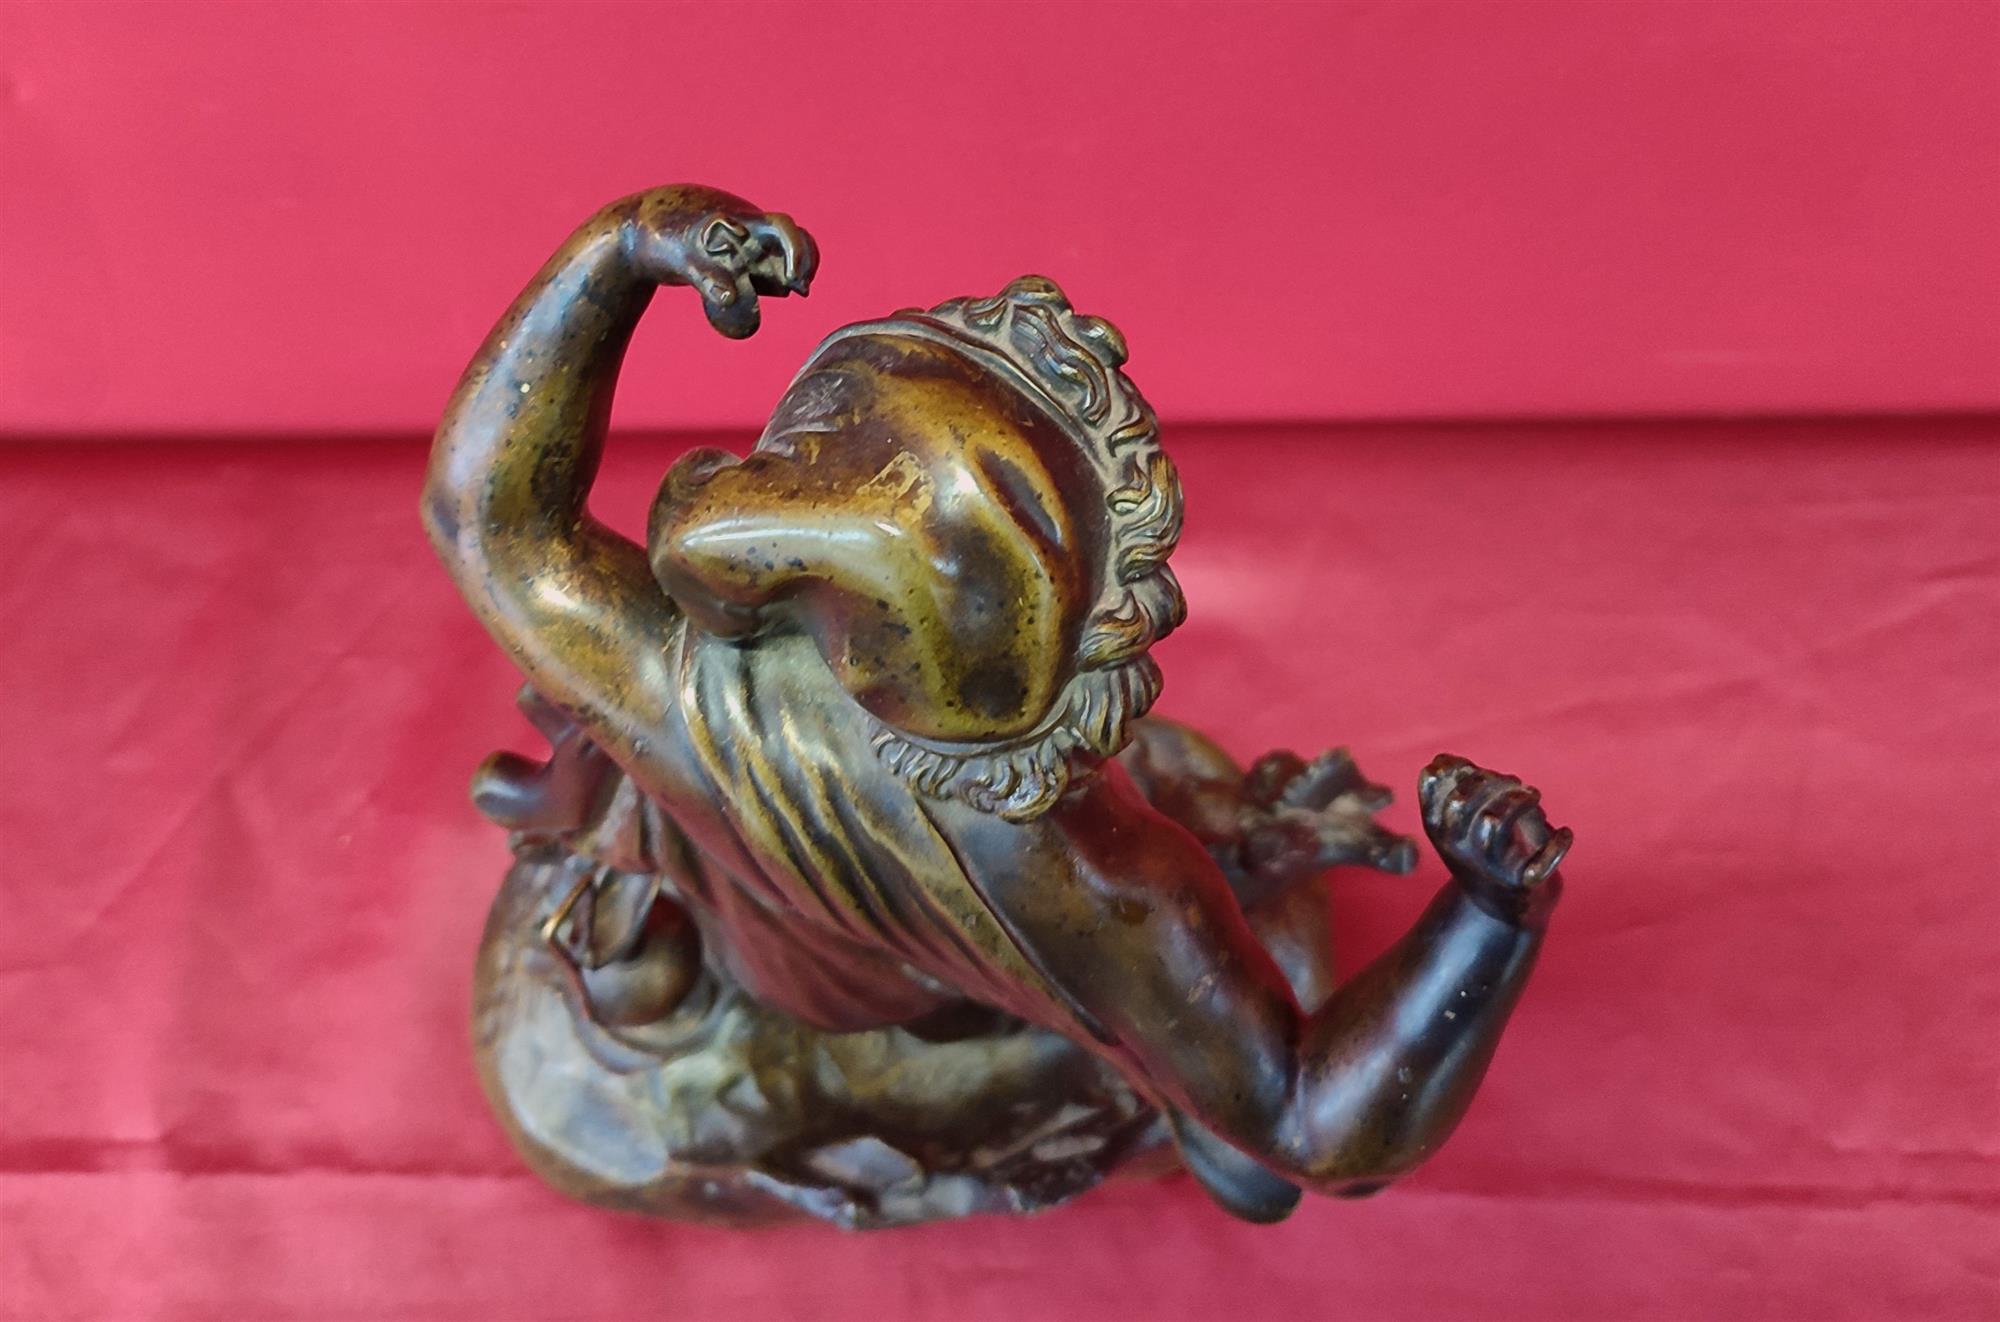 Bacchus dancing bronze figure